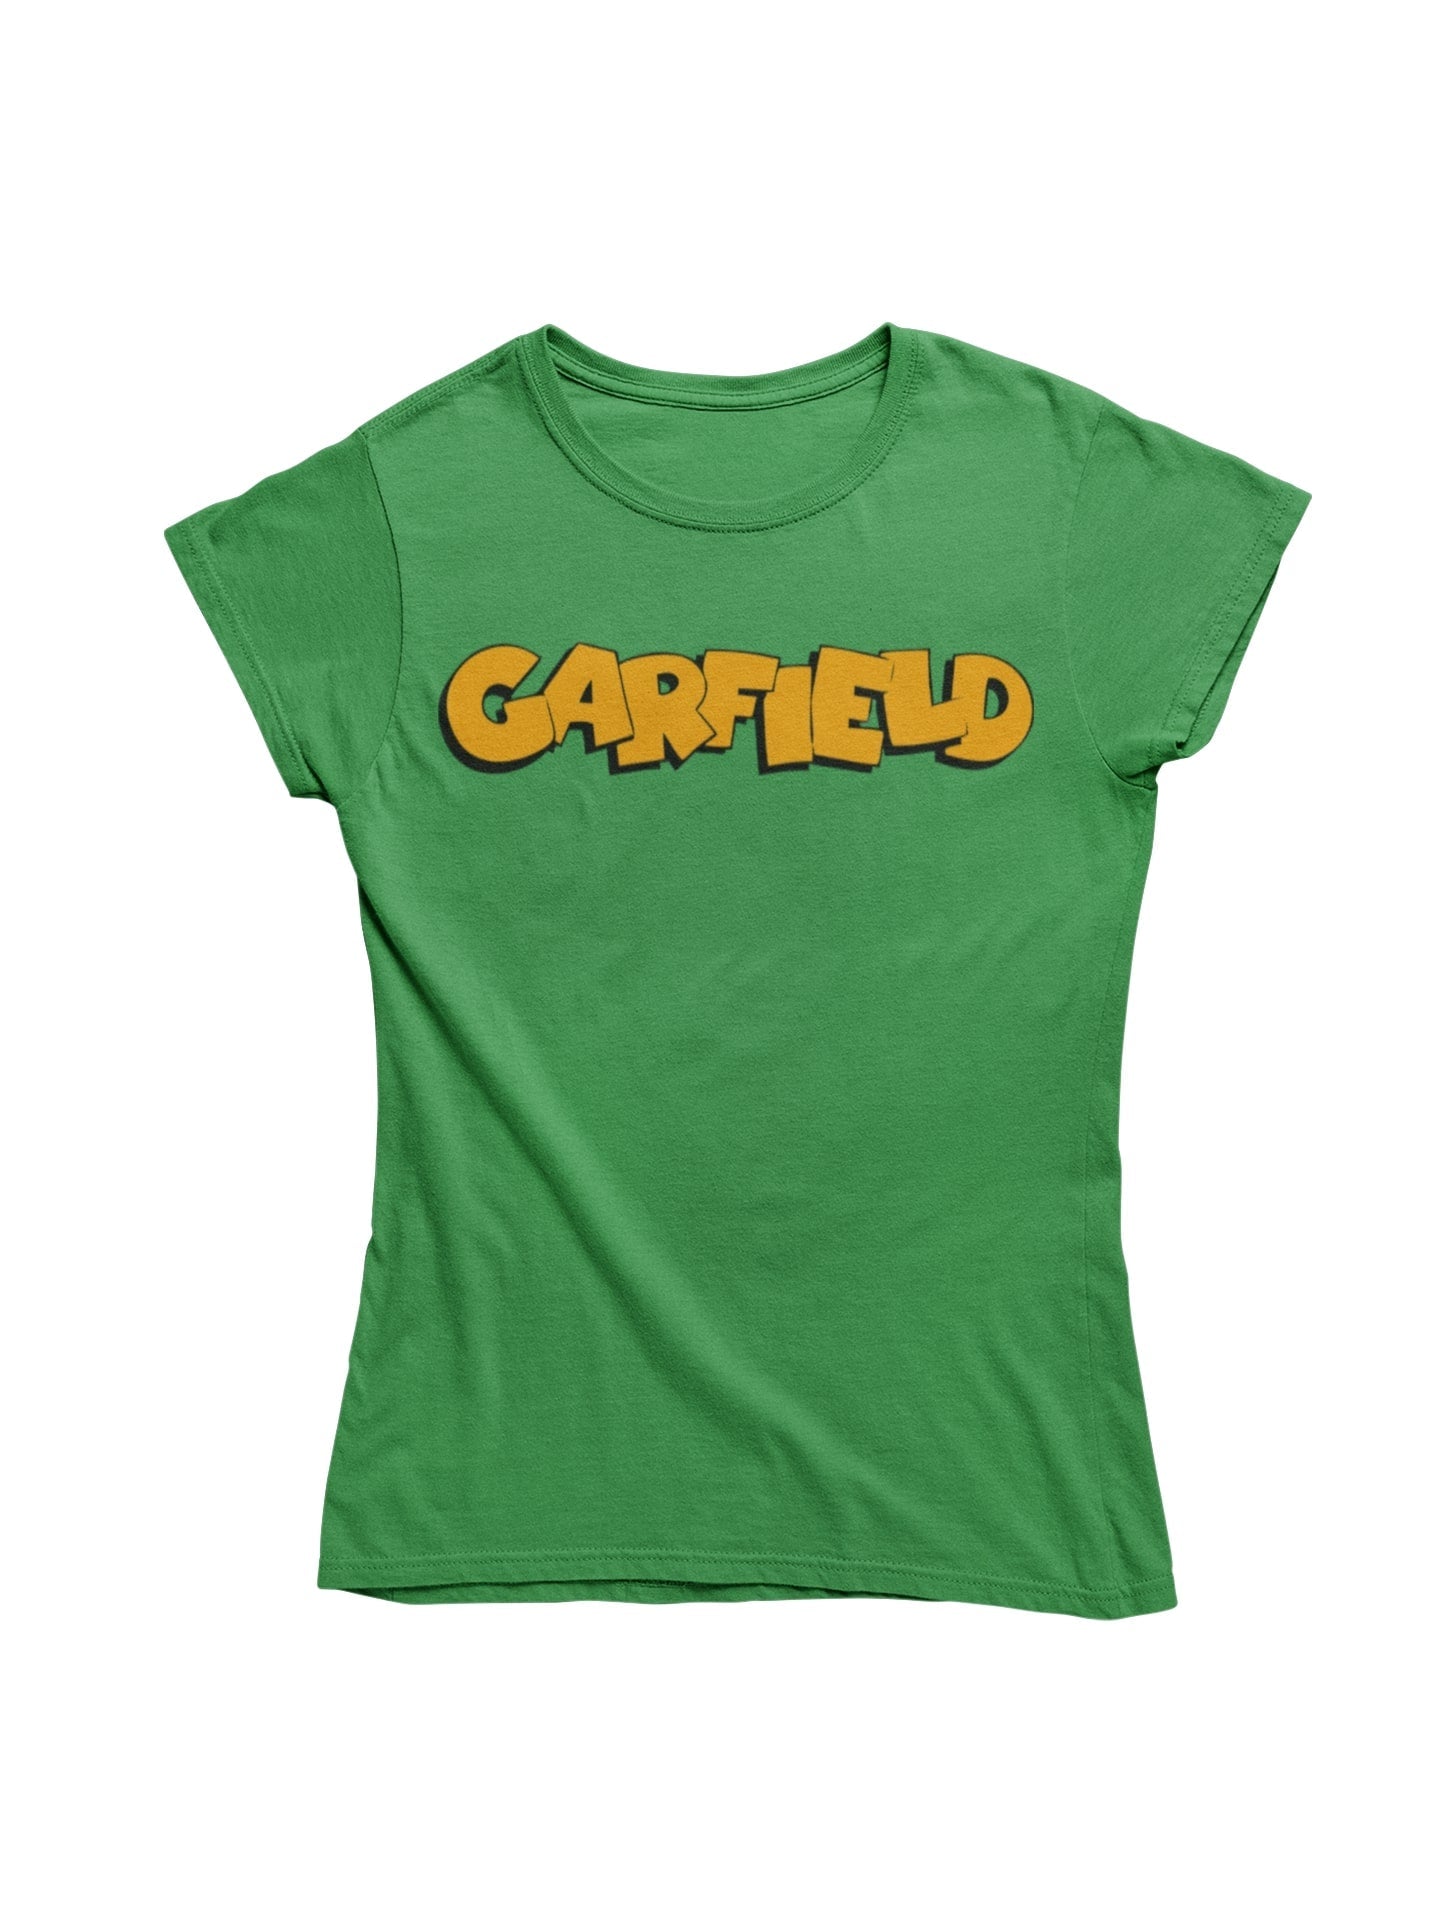 thelegalgang,Garfield-T shirt for Women,WOMEN.